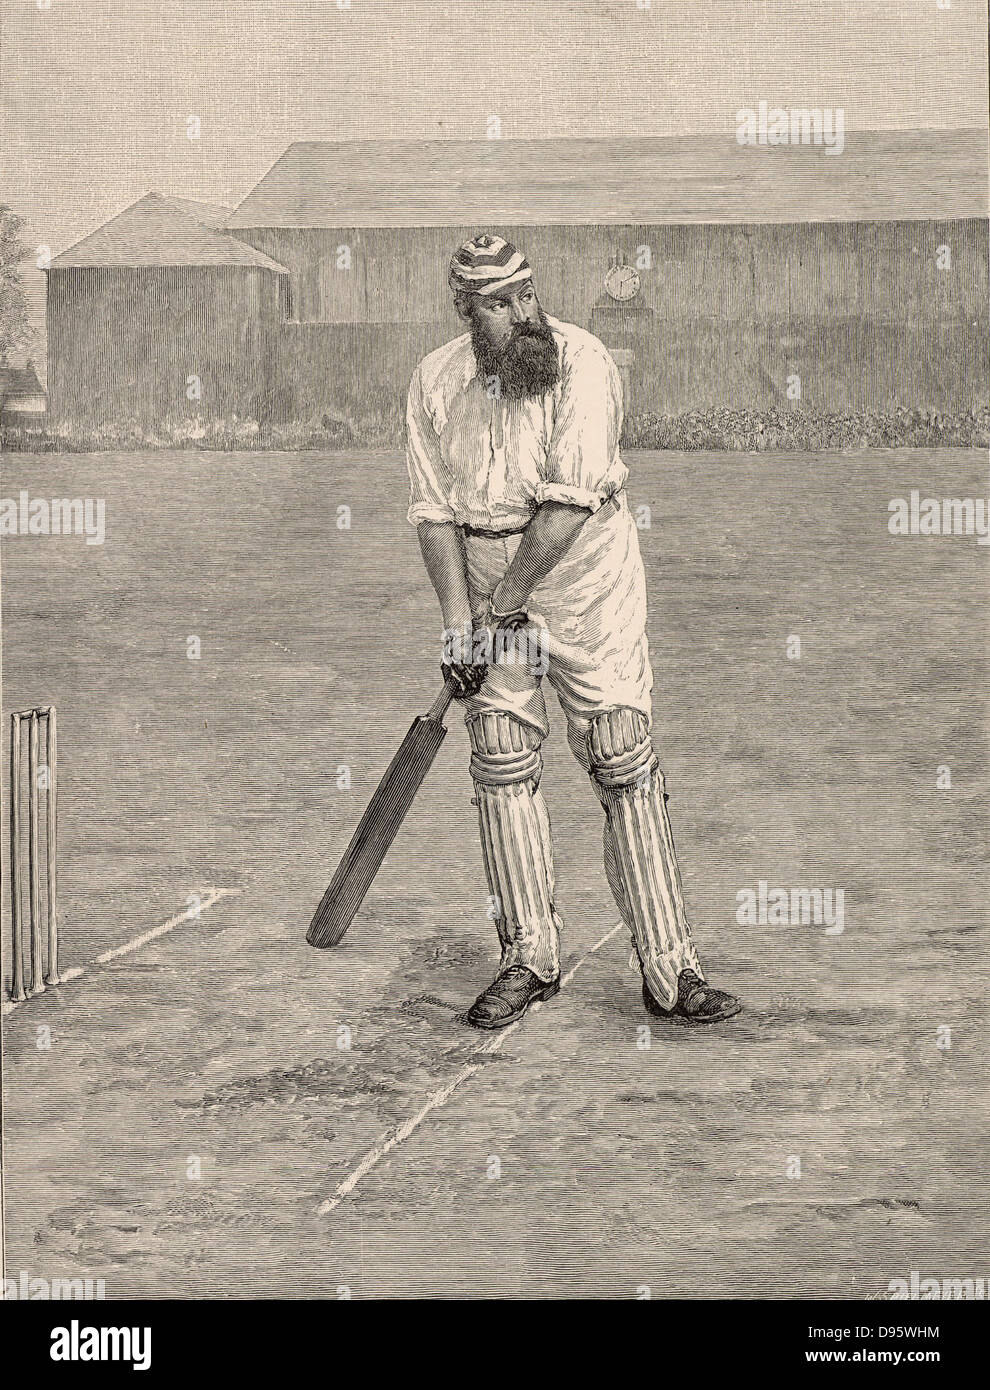 William Gilbert ('W G') Grace (1848-1915) Englisch erstklassige cricketer und Arzt, bei Downend in der Nähe von Bristol geboren. Gnade am Knick bereit, eine Kugel von der Bowler zu erhalten. Seine Karriere dauerte von 1864-1908. Gravur von "Der englische Illustrierte" (London, 1890). Stockfoto